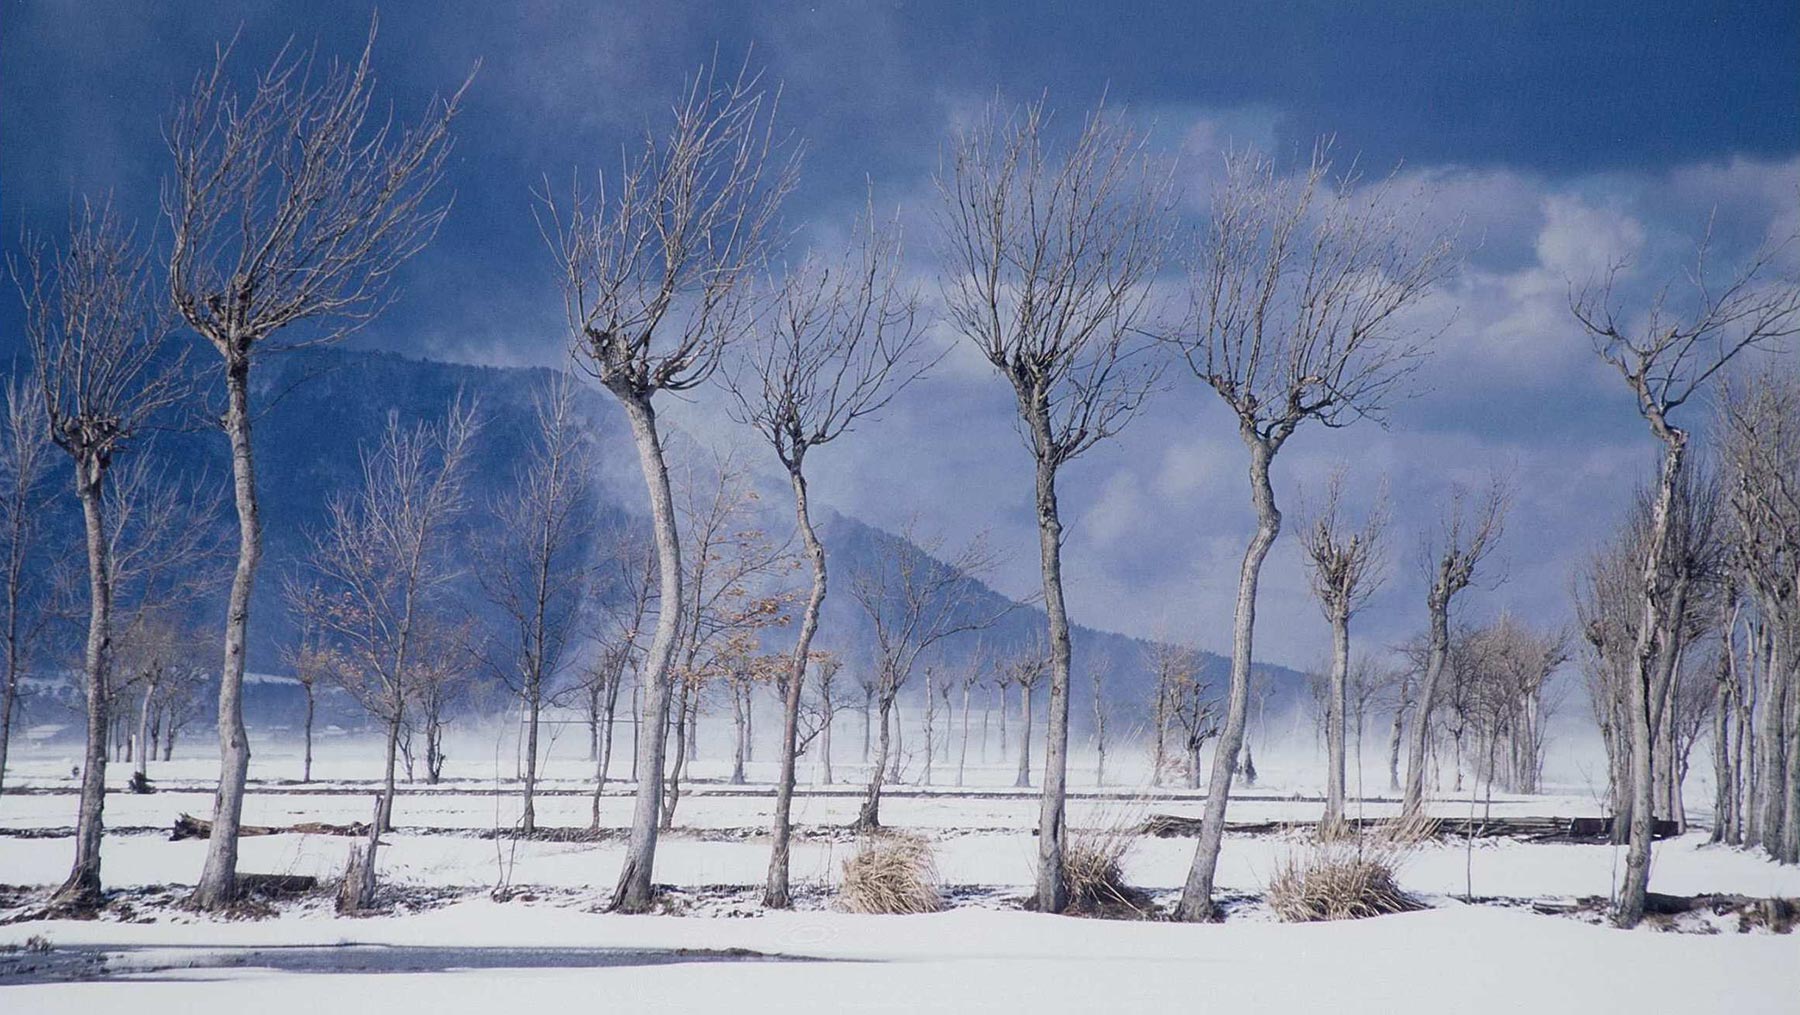 ―冬― 寒冬吹雪後的稻架樹